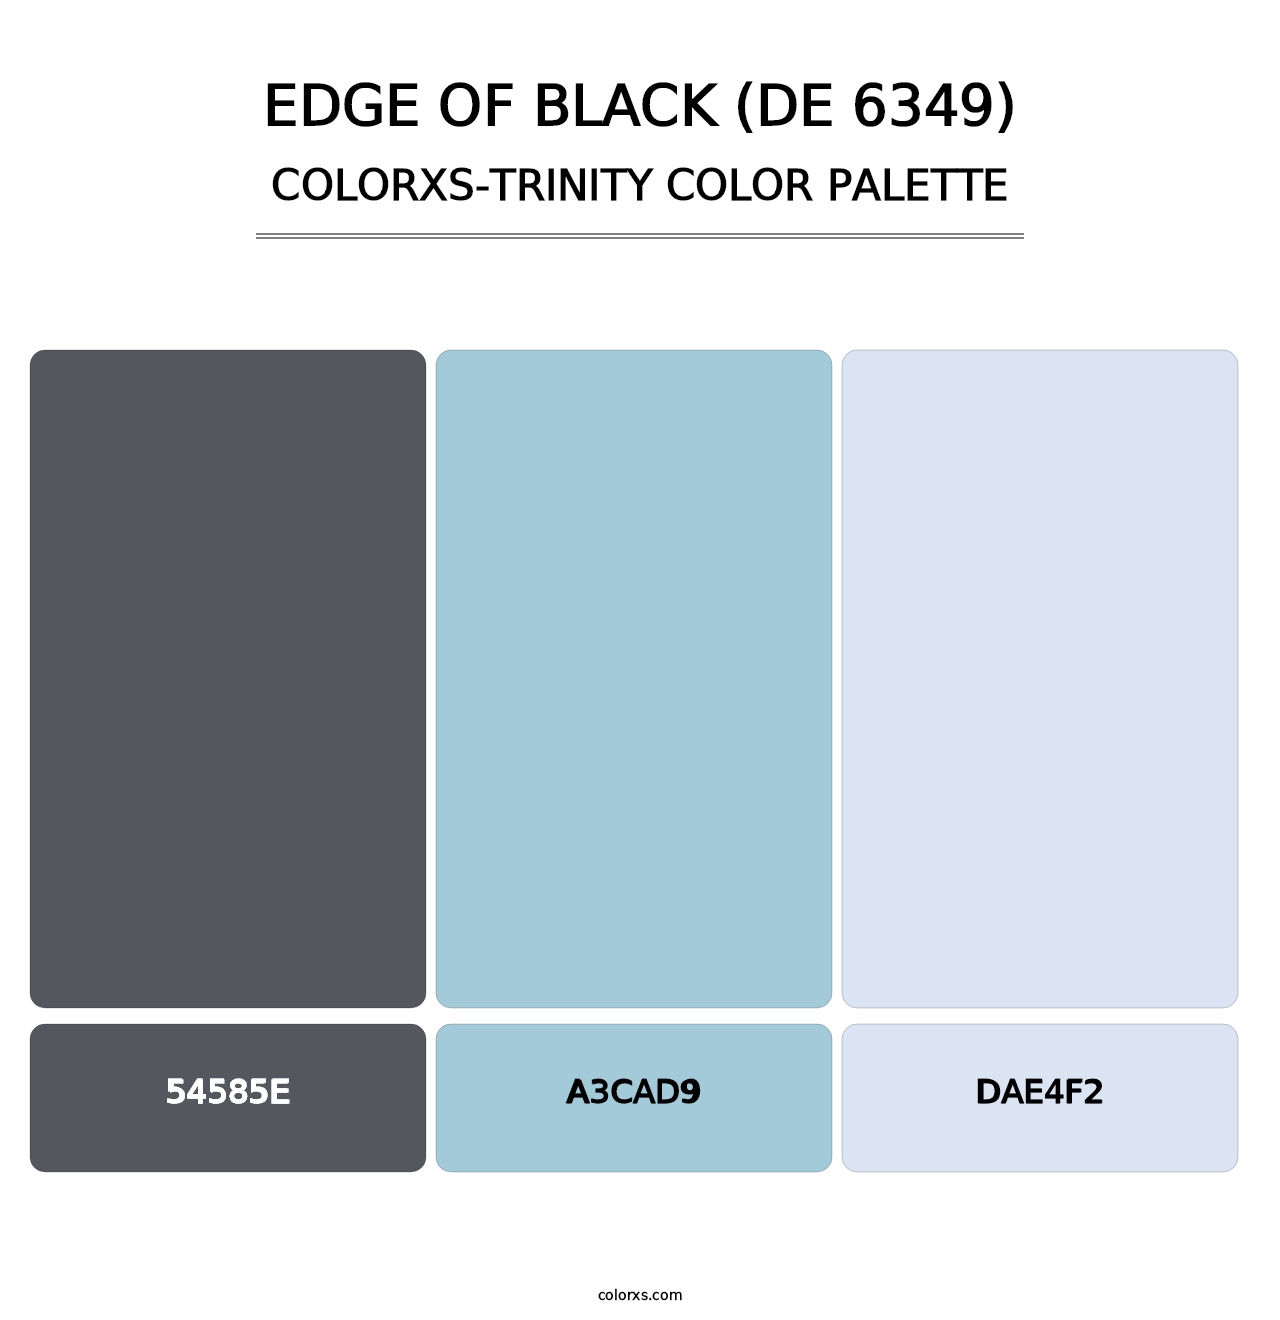 Edge of Black (DE 6349) - Colorxs Trinity Palette